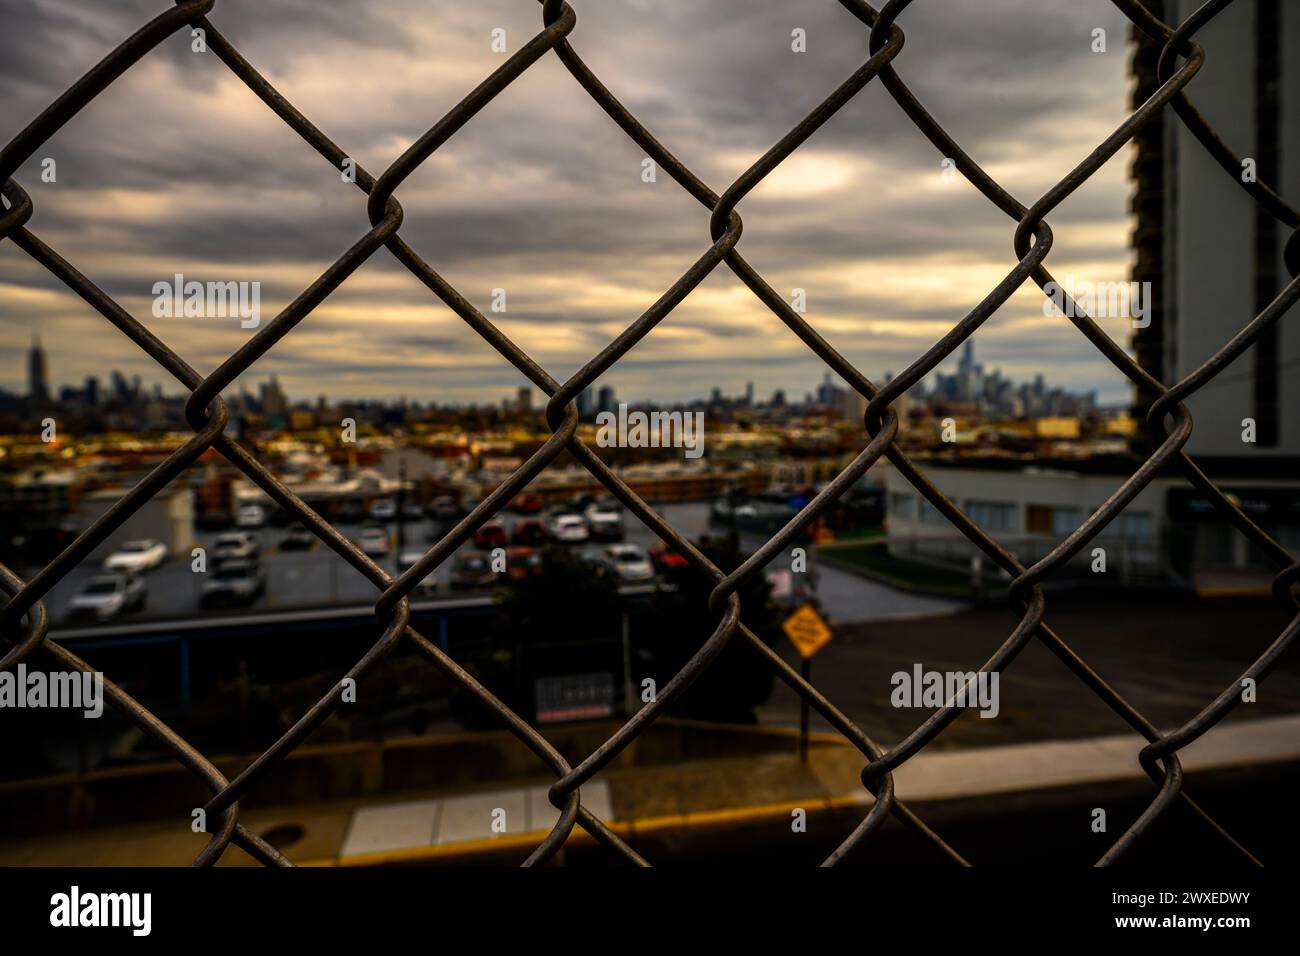 Vista sul porto di New York, Manhattan e la Statua della libertà dal Liberty State Park, Jersey City, New Jersey, USA Foto Stock